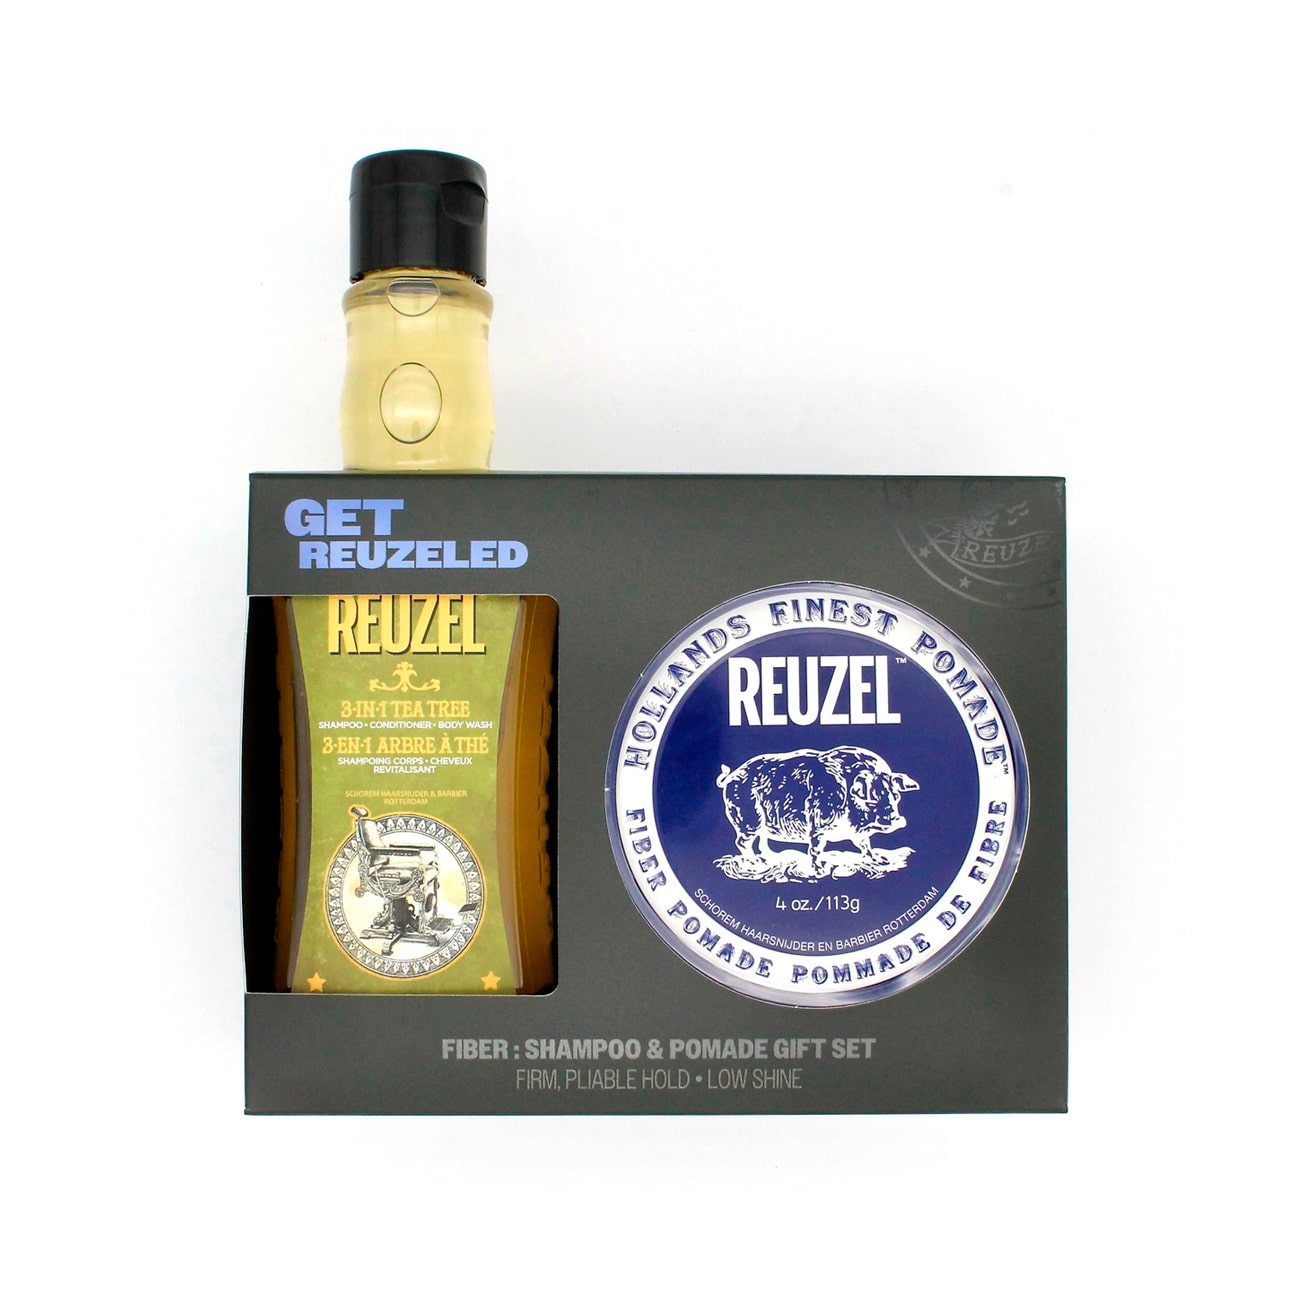 Fiber: Shampoo & pomade gift set - Reuzel